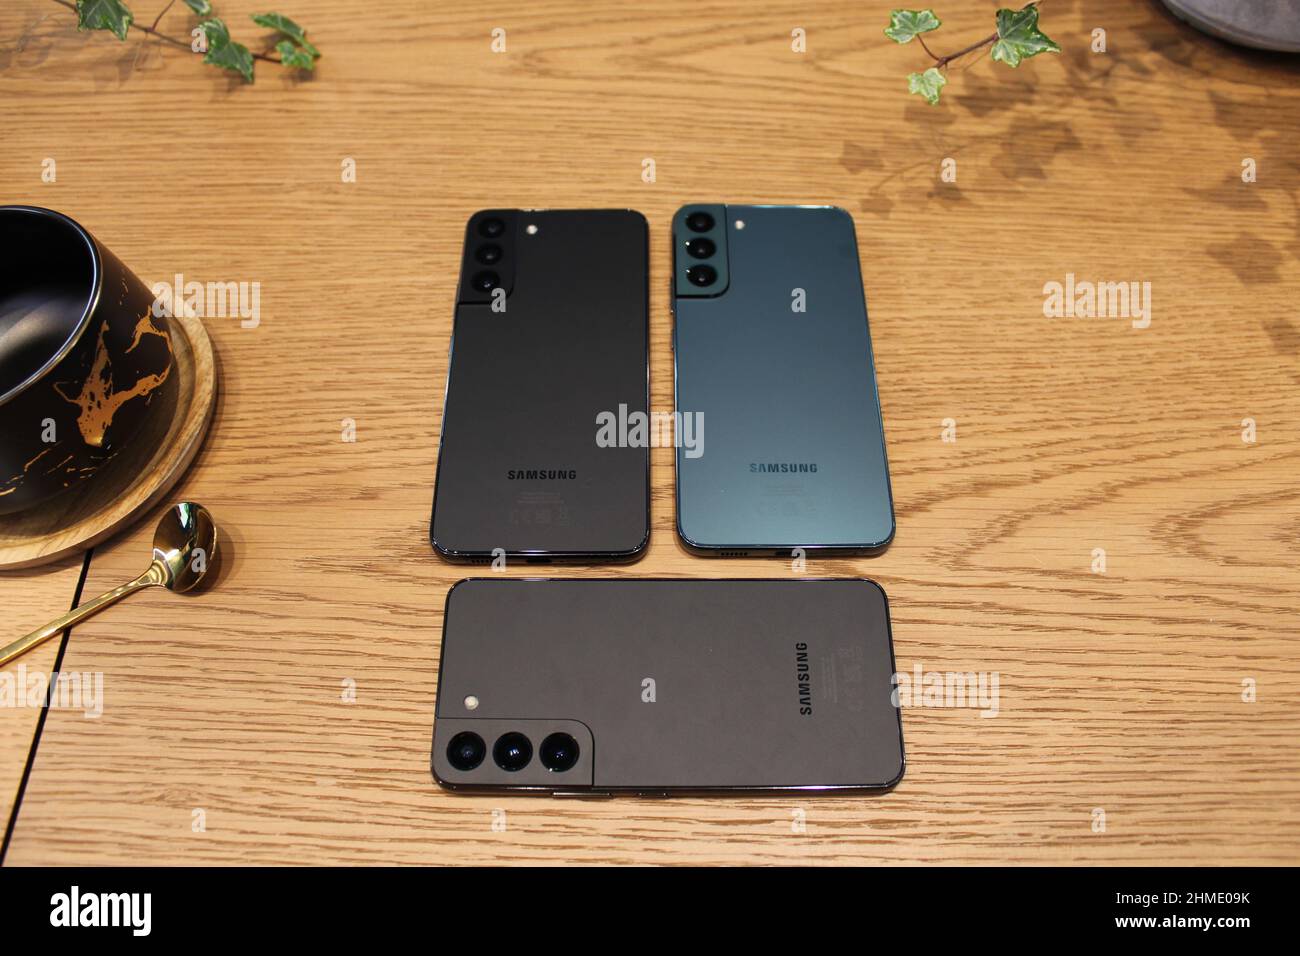 Die neue Serie von Samsung Galaxy S22 Handys, die von der Firma vorgestellt wurden. Bilddatum: Mittwoch, 9. Februar 2022. Stockfoto